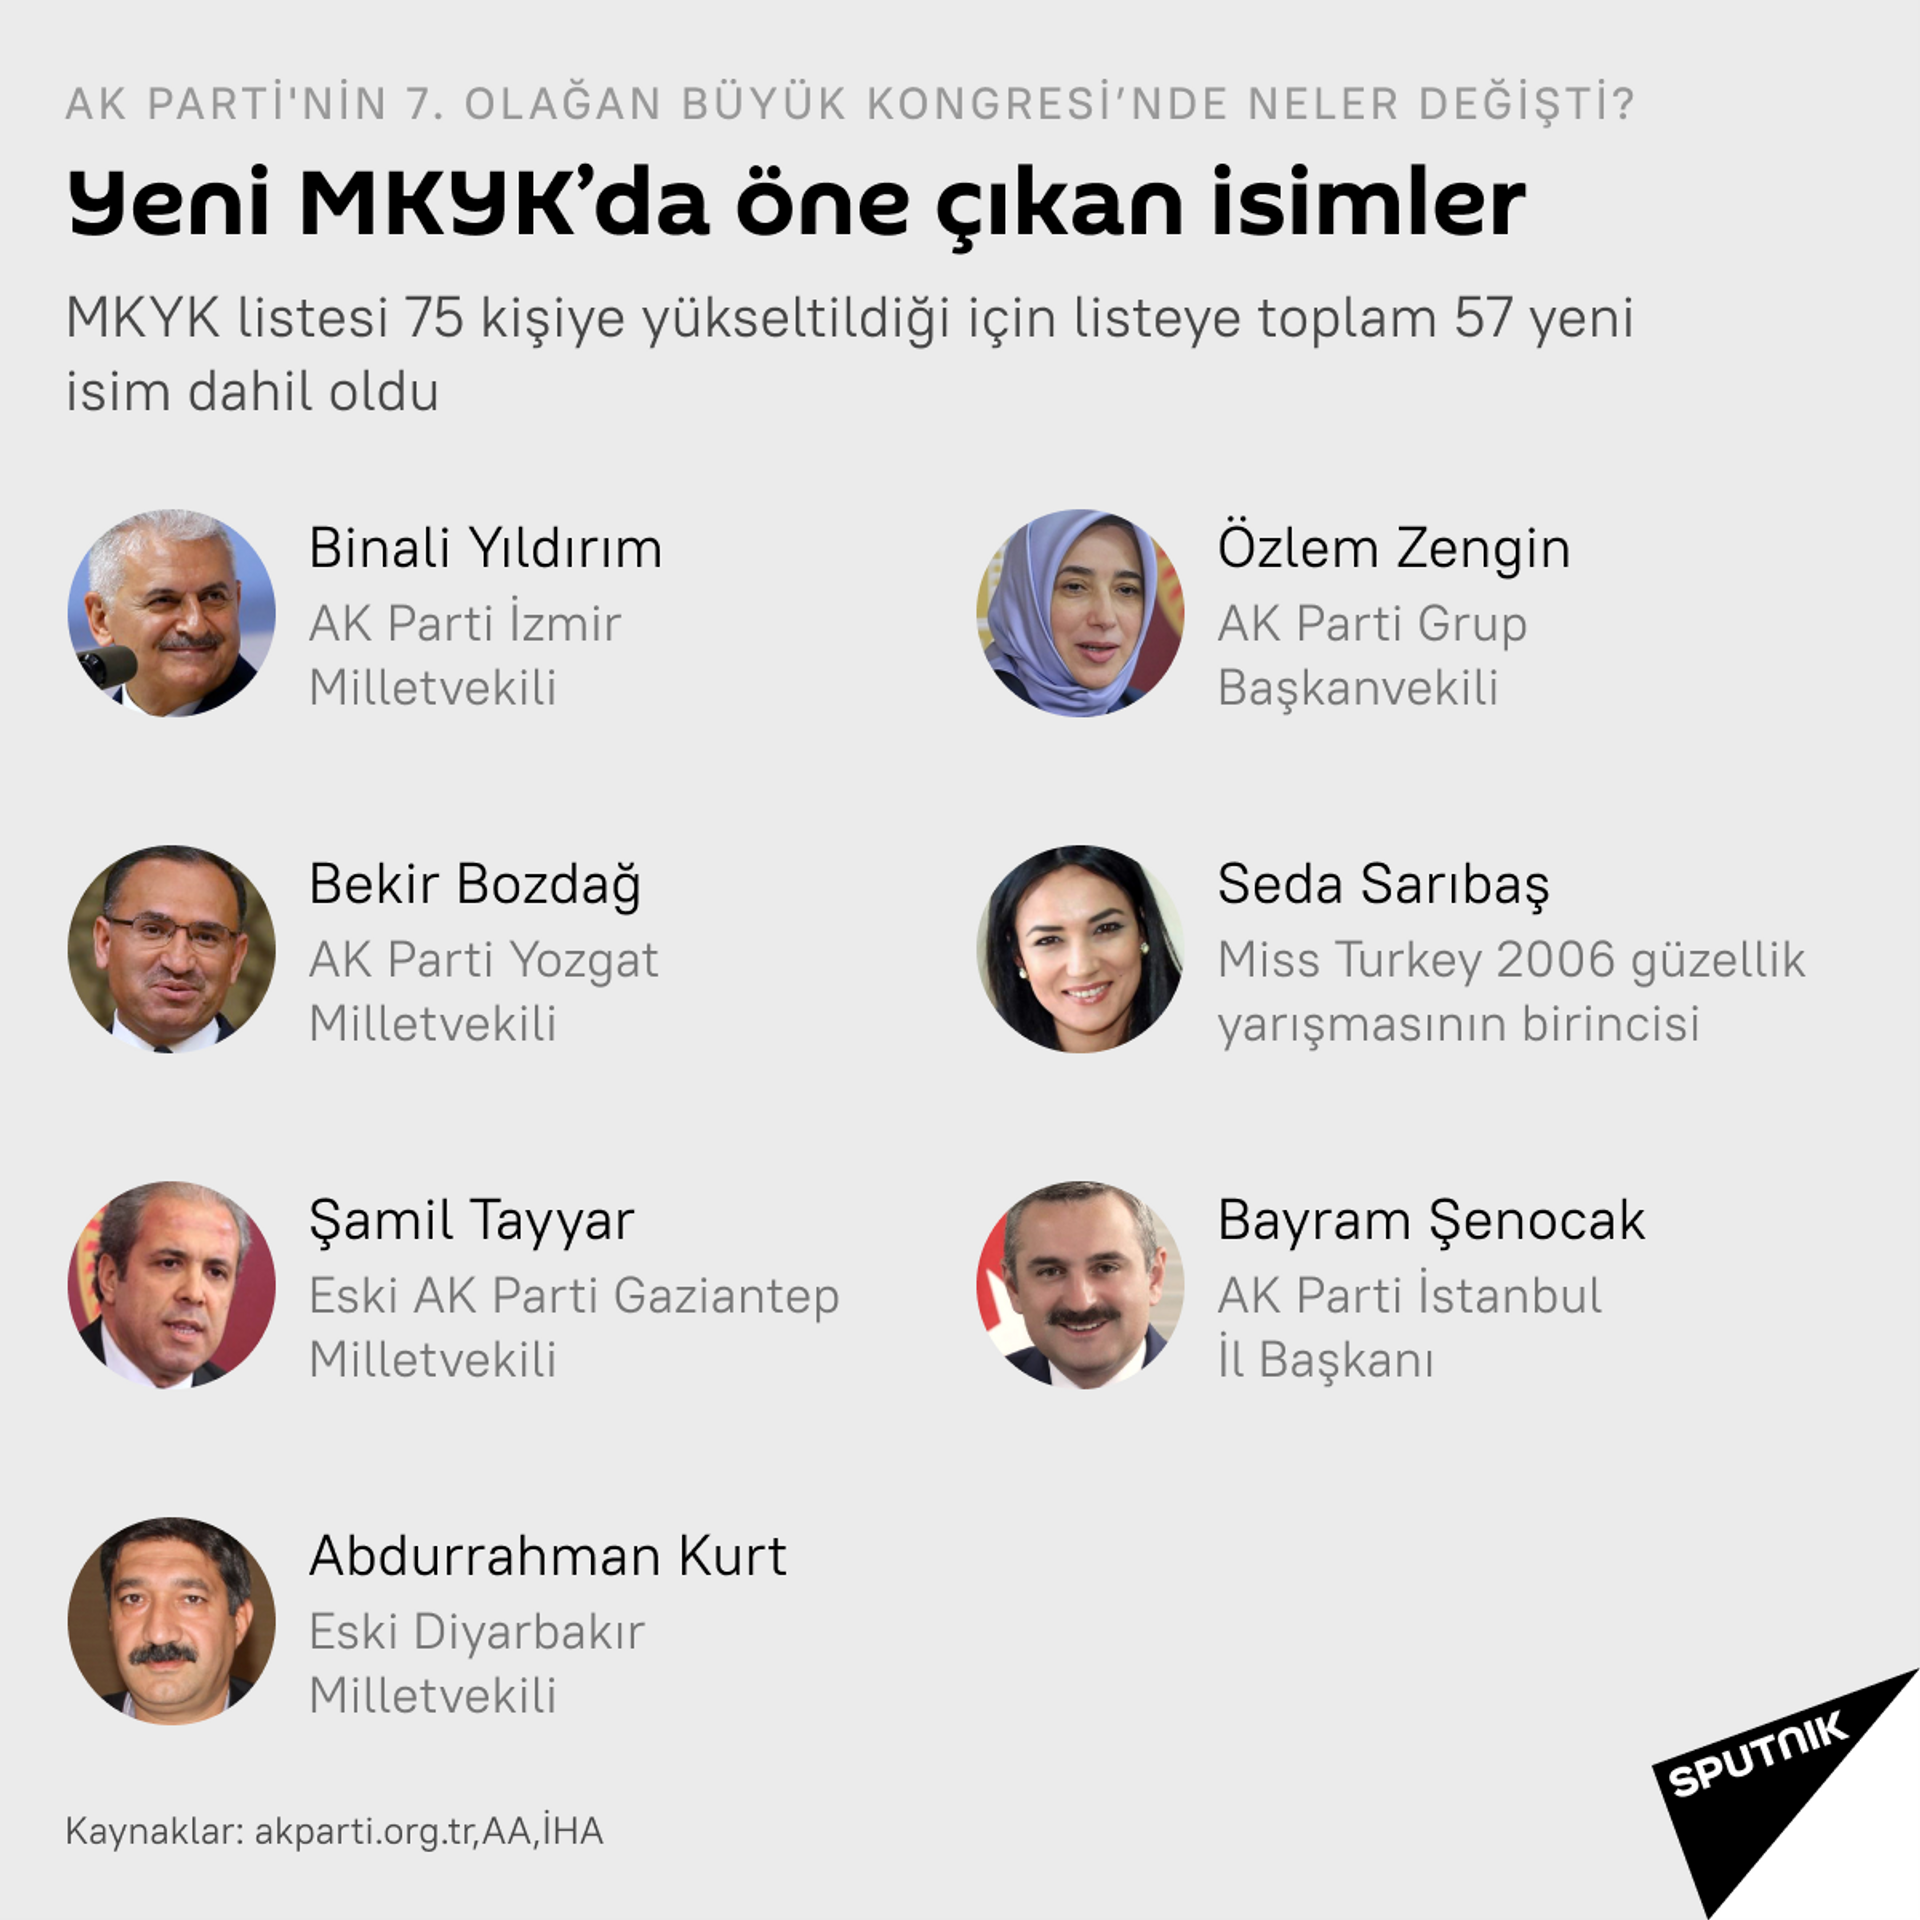 AK Parti'nin 7. Olağan Büyük Kongresi'nde neler değişti? - Sputnik Türkiye, 1920, 25.03.2021